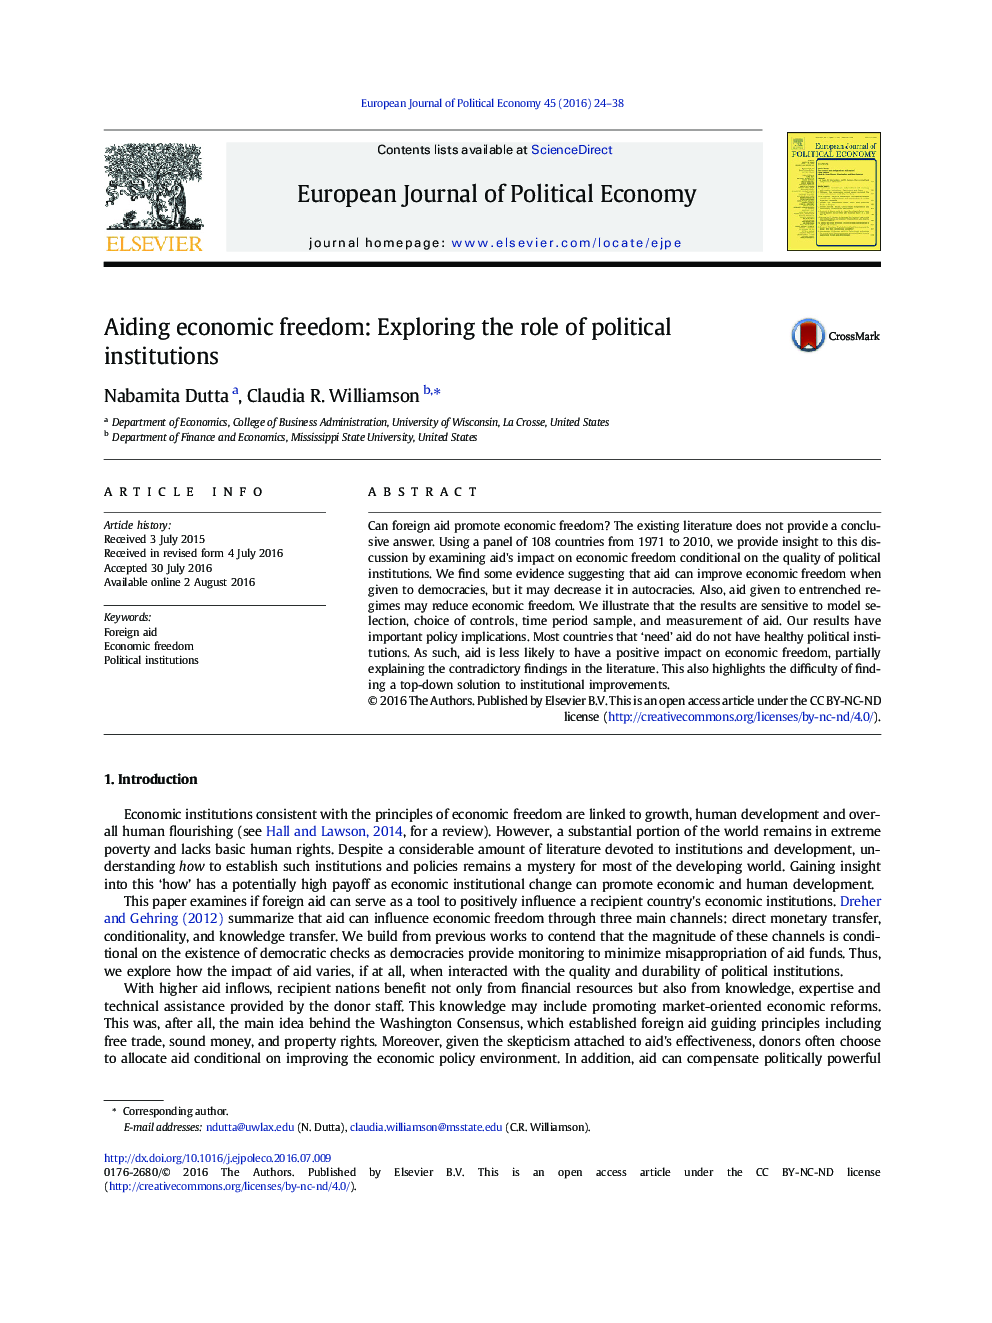 کمک به آزادی اقتصادی: بررسی نقش نهادهای سیاسی 